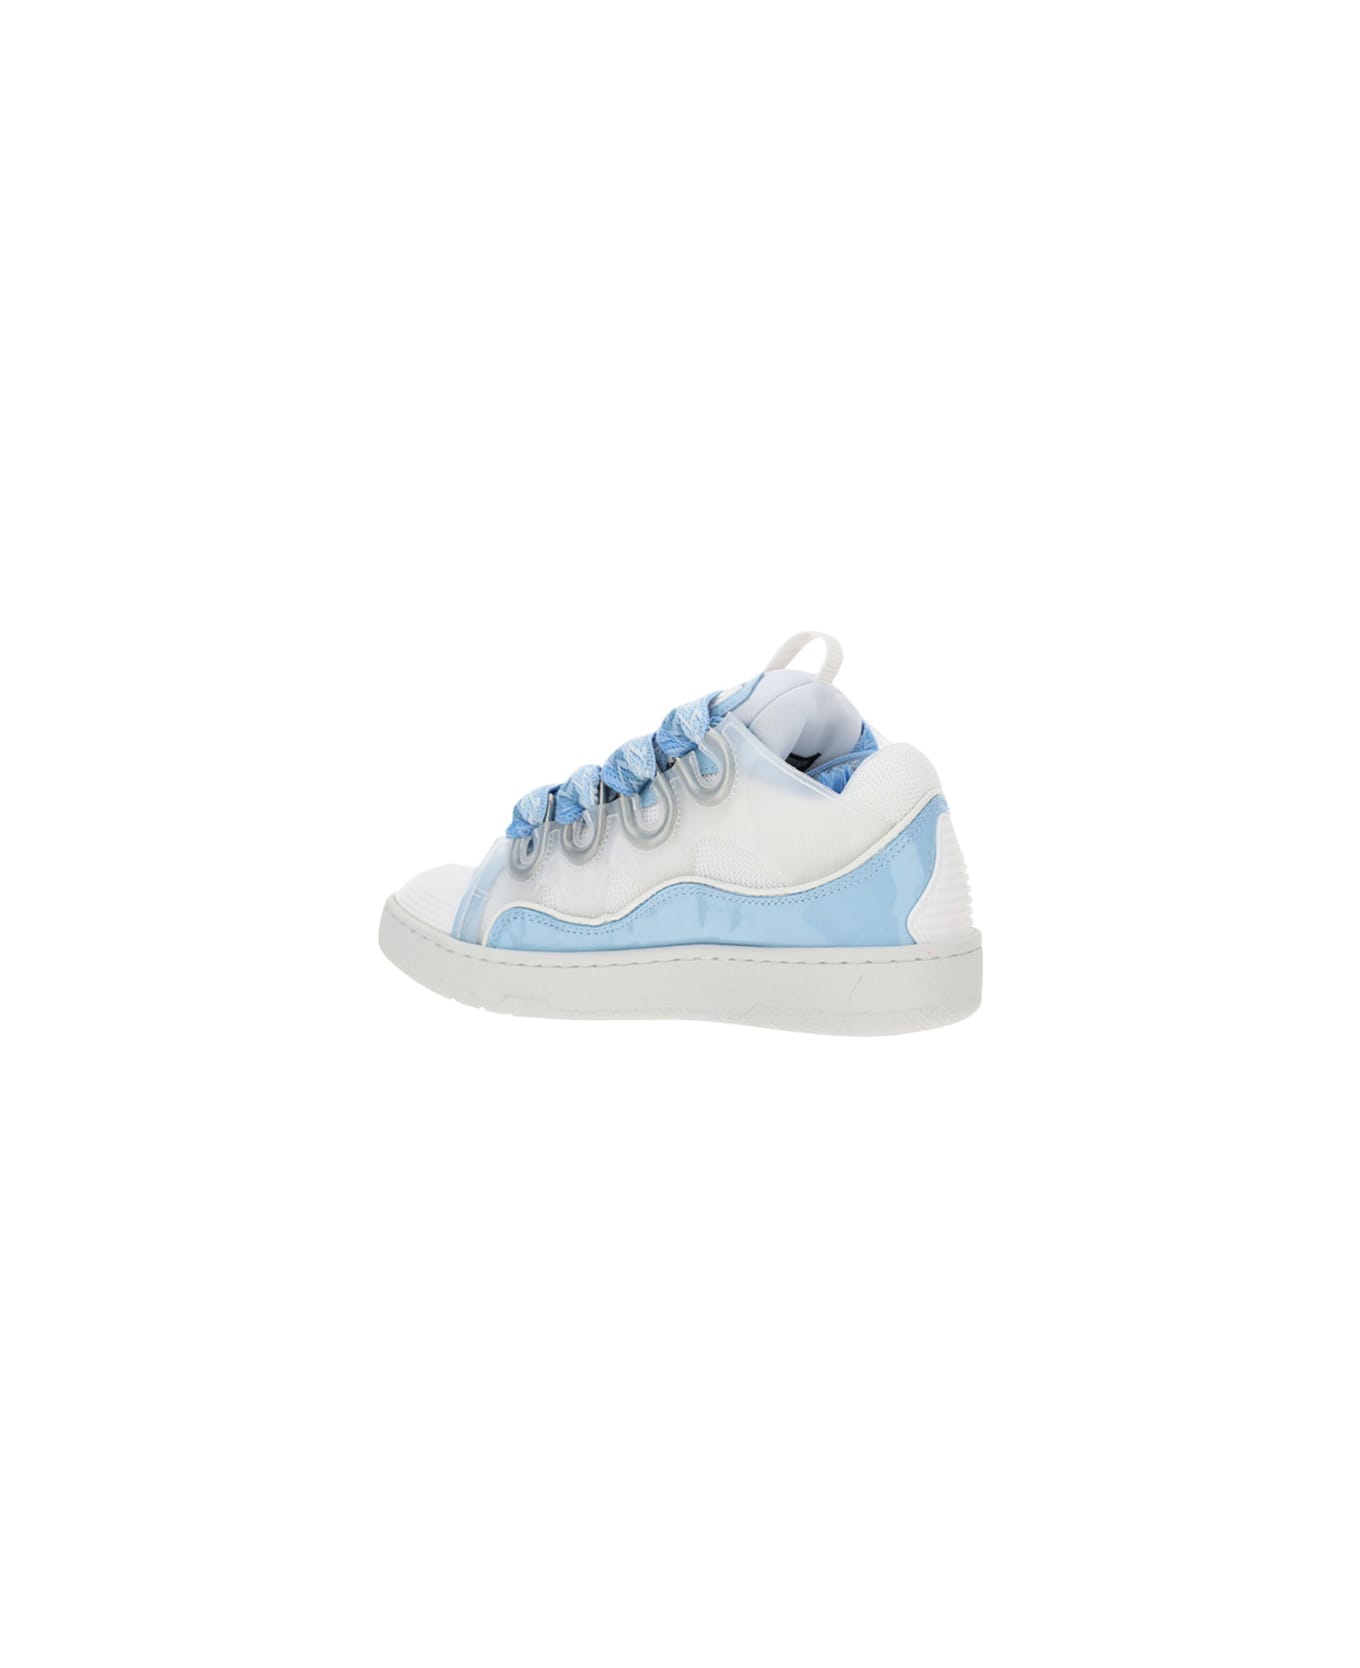 Lanvin Curb Sneakers - Lanvin Blue